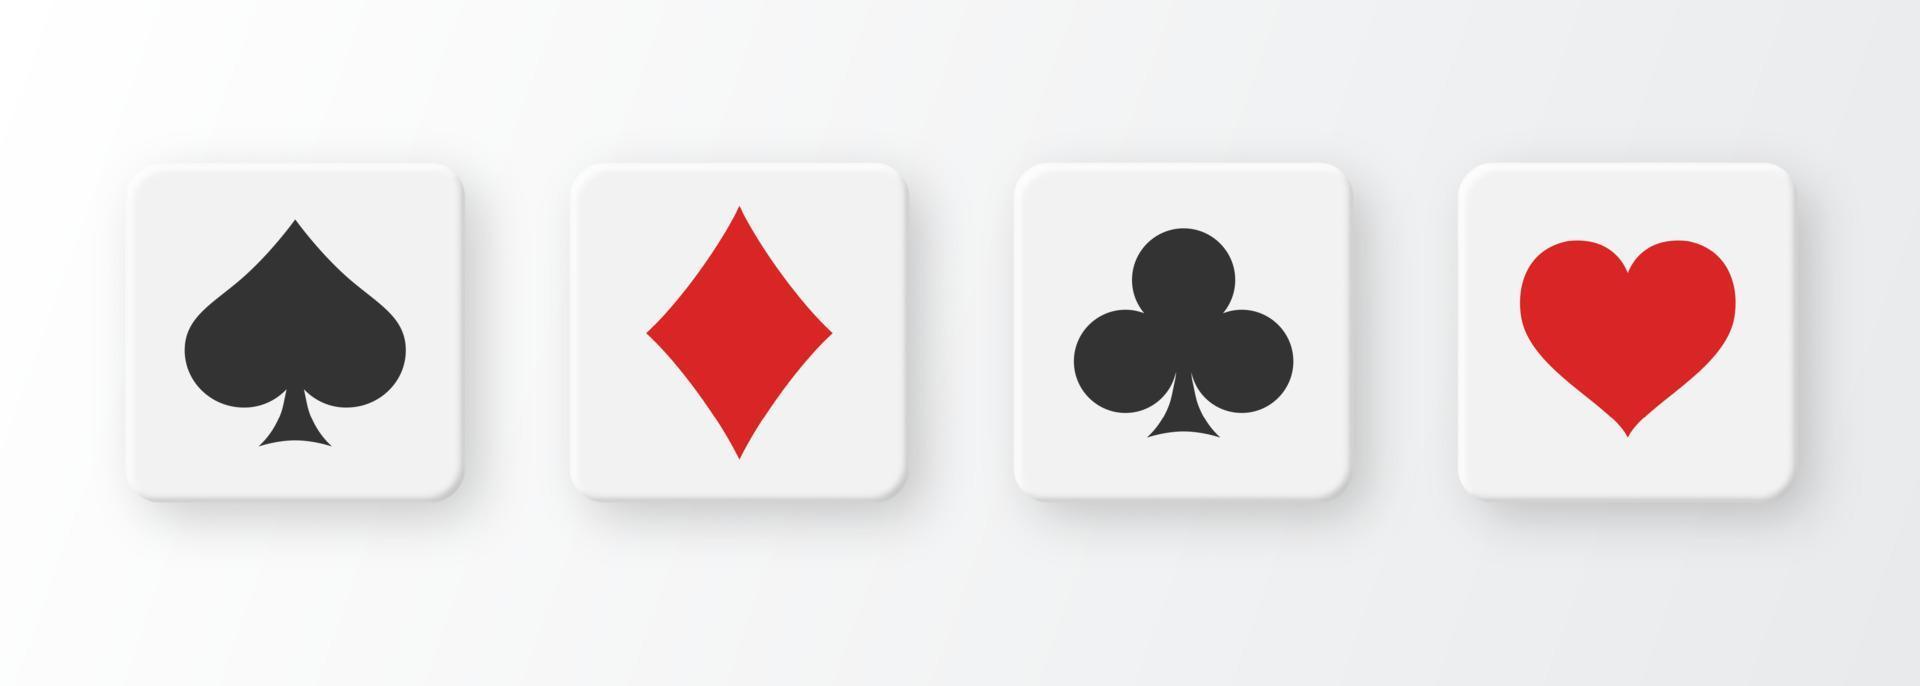 Botones de póquer y casino con juego de baraja de cartas sobre fondo blanco. vector